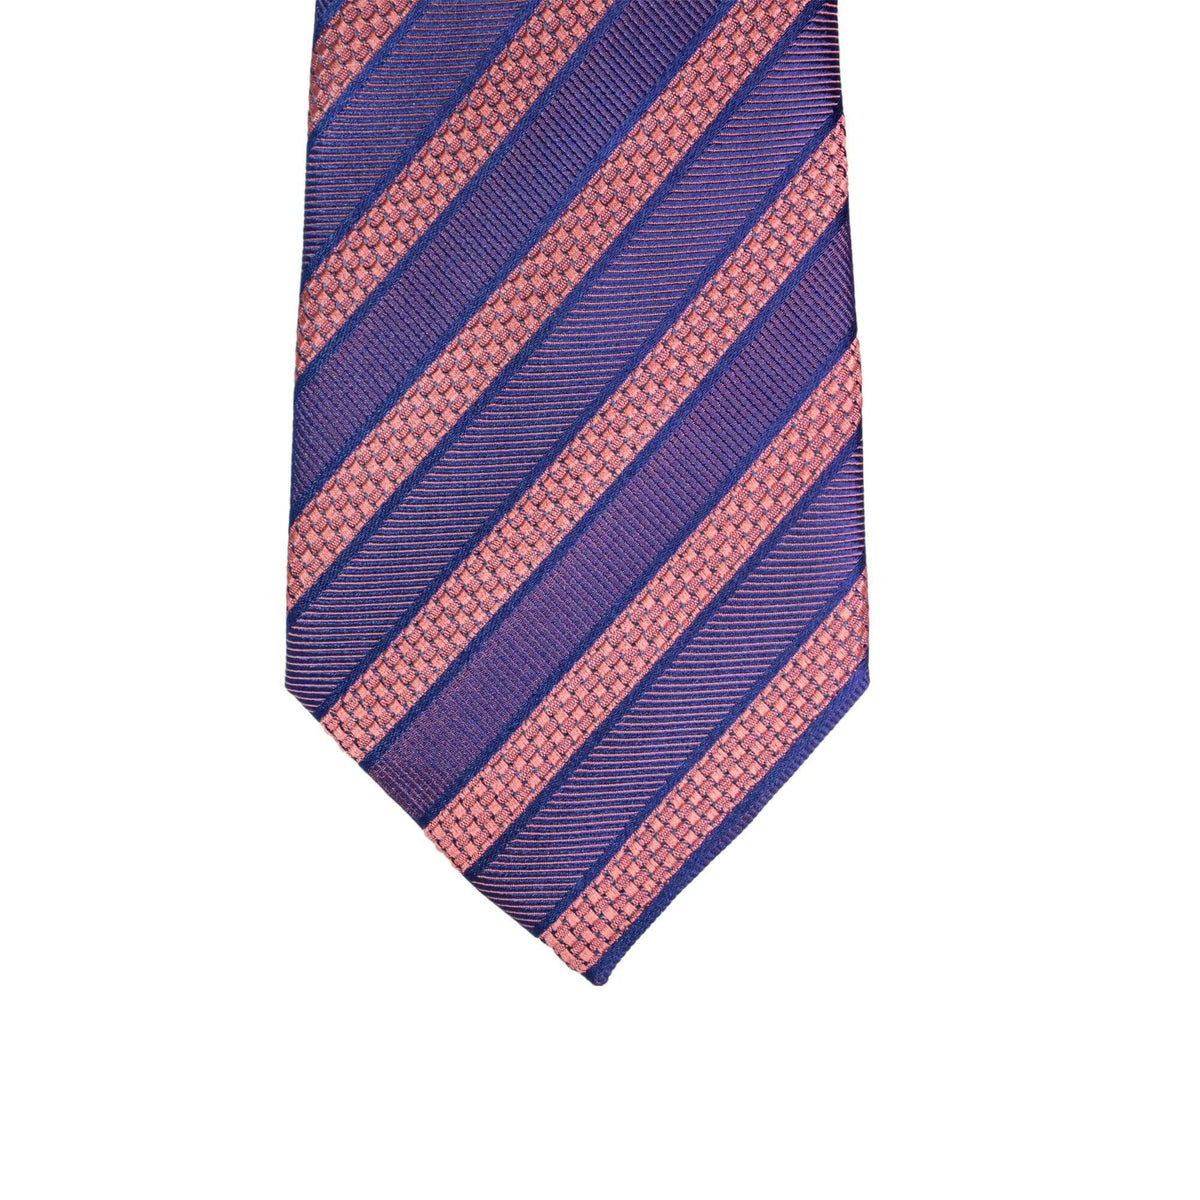 8cm Woven Pink with Indigo Striped Necktie-Cufflinks.com.sg | Neckties.com.sg